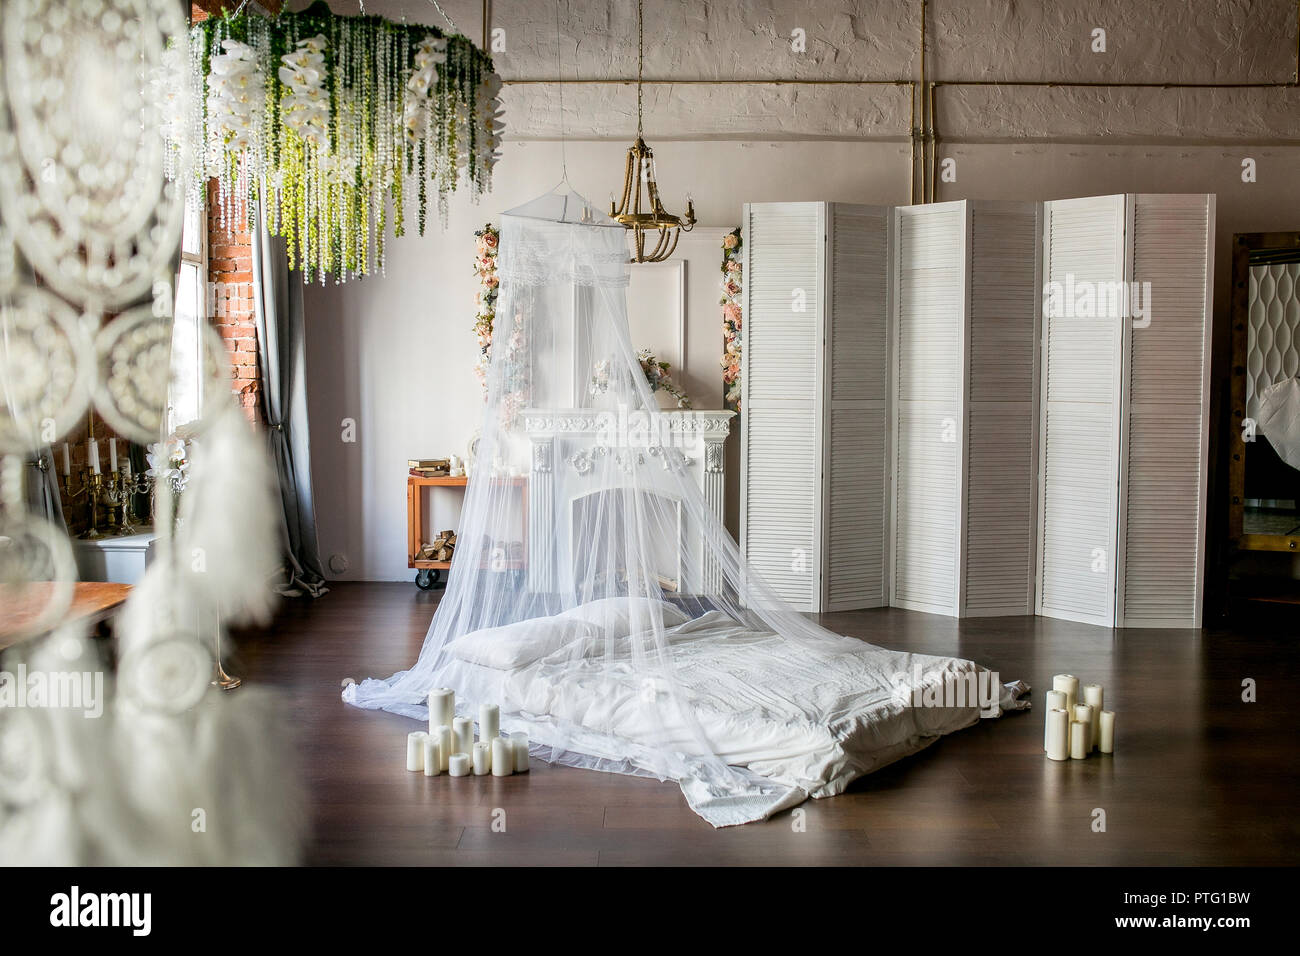 Loft-stil Zimmer mit einem Bett, einem Baldachin, ein weißer Kamin mit einem Blumenarrangement, einen weißen Bildschirm, einem großen Spiegel und Kerzen Stockfoto